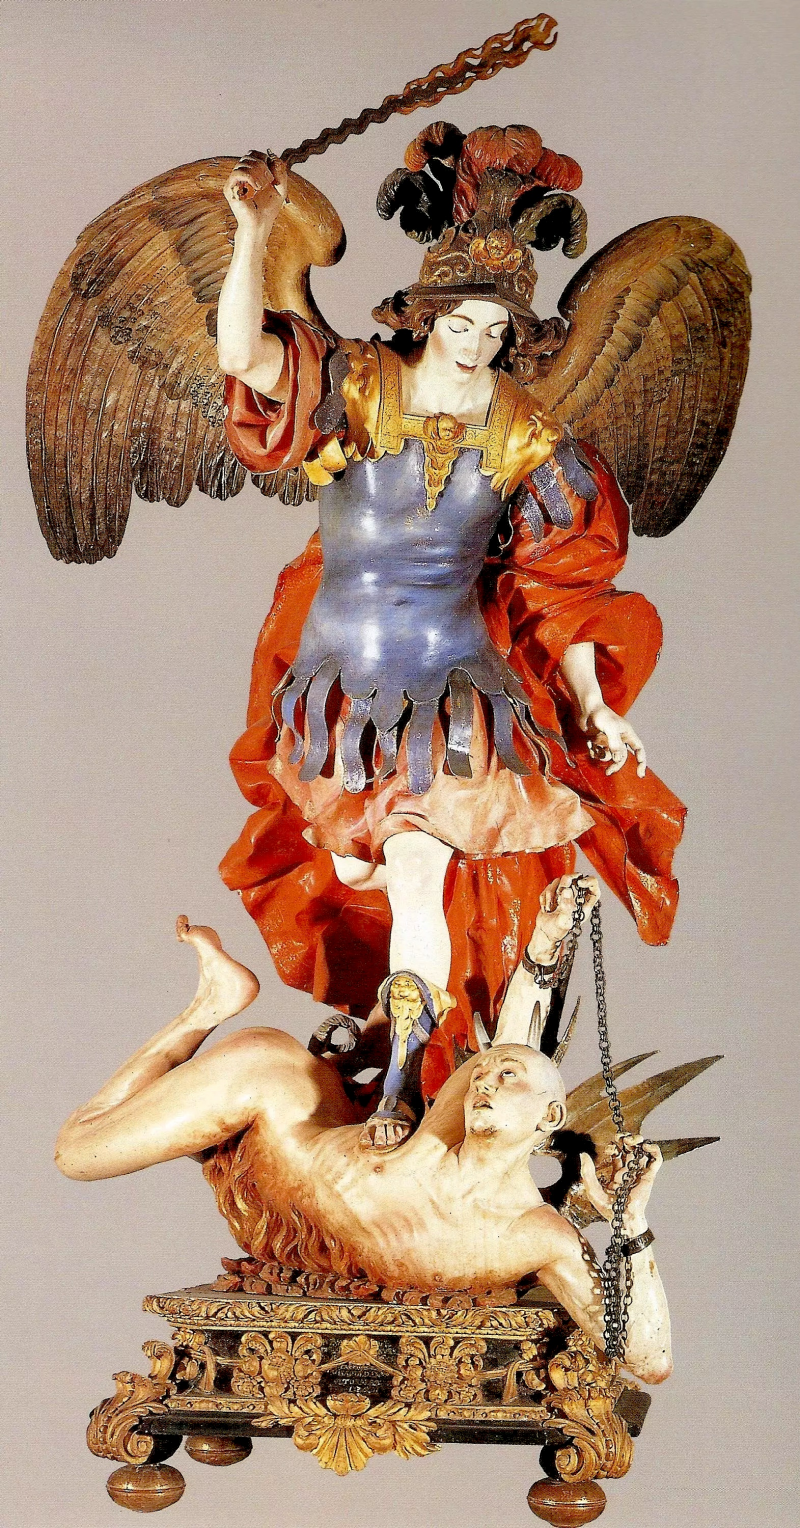 El arcángel san Miguel venciendo al demonio.